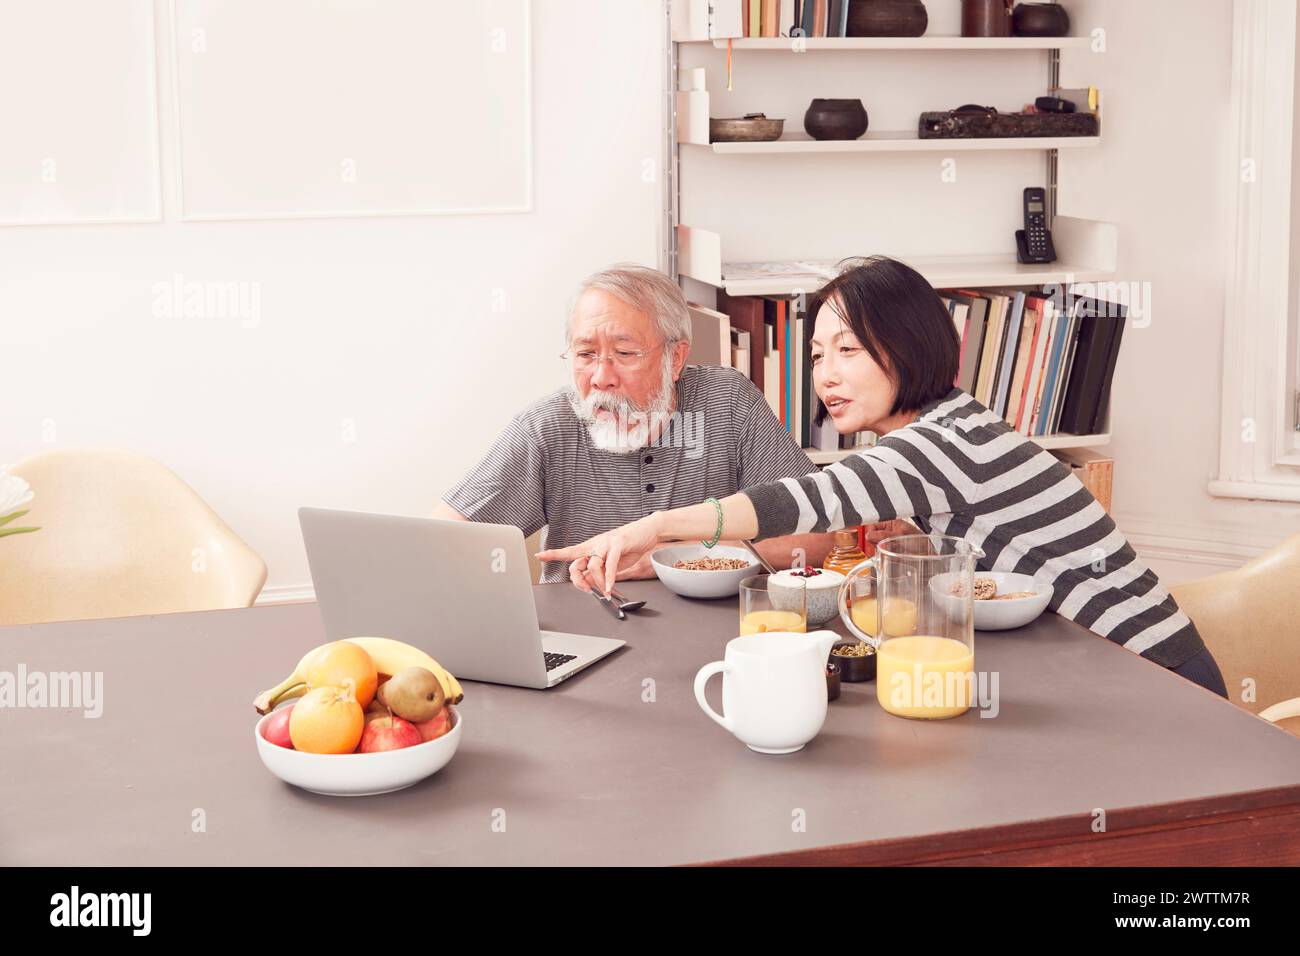 Zwei Personen, die einen Laptop an einem Esstisch benutzen. Stockfoto